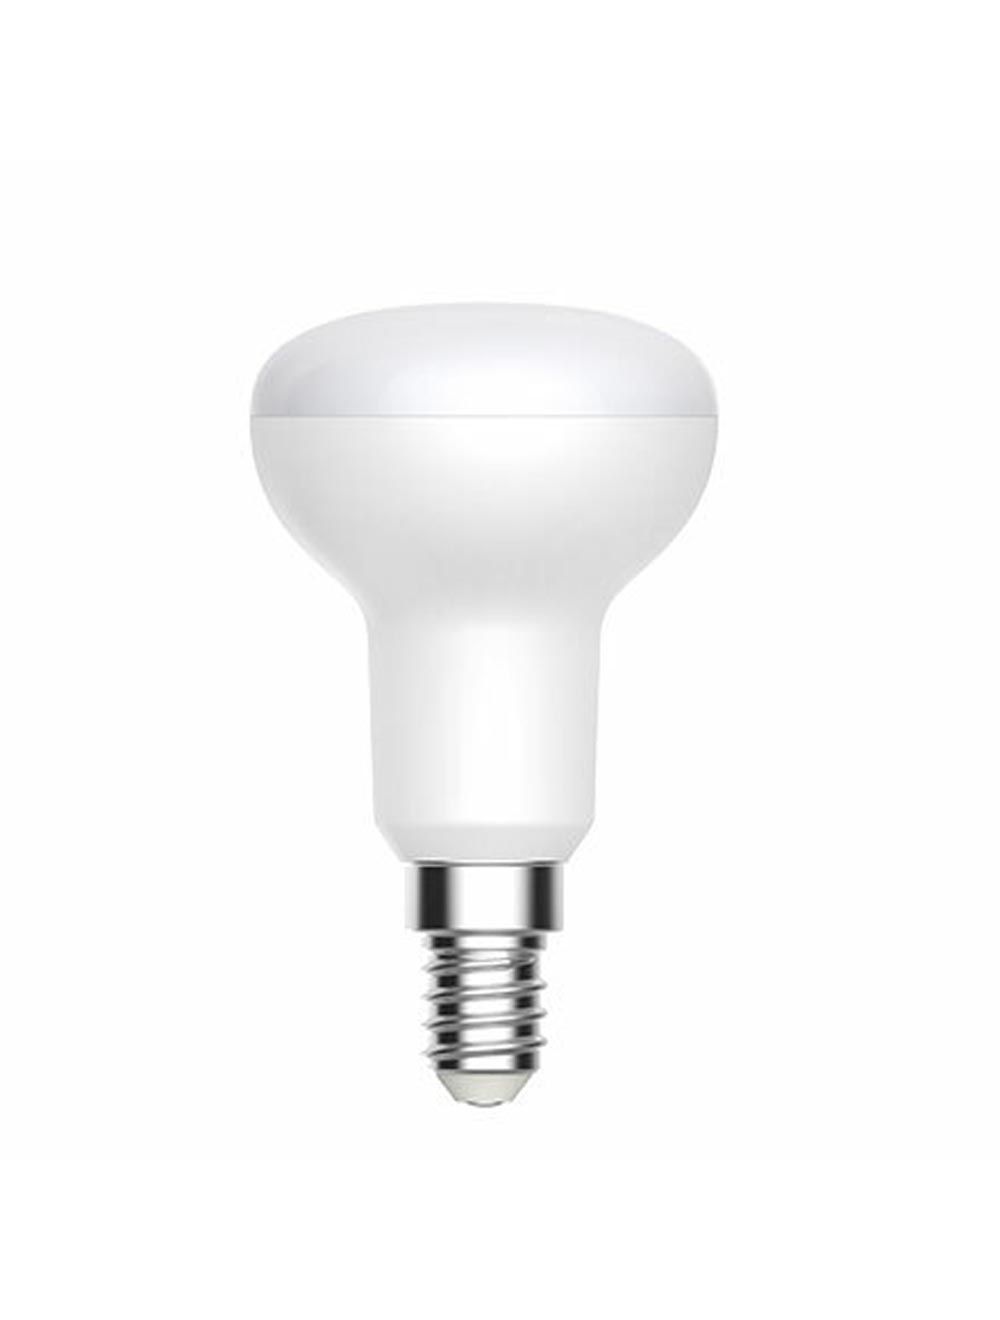 Économisez sur l'énergie avec nos ampoules LED GU10 5W – équivalent de 50W!